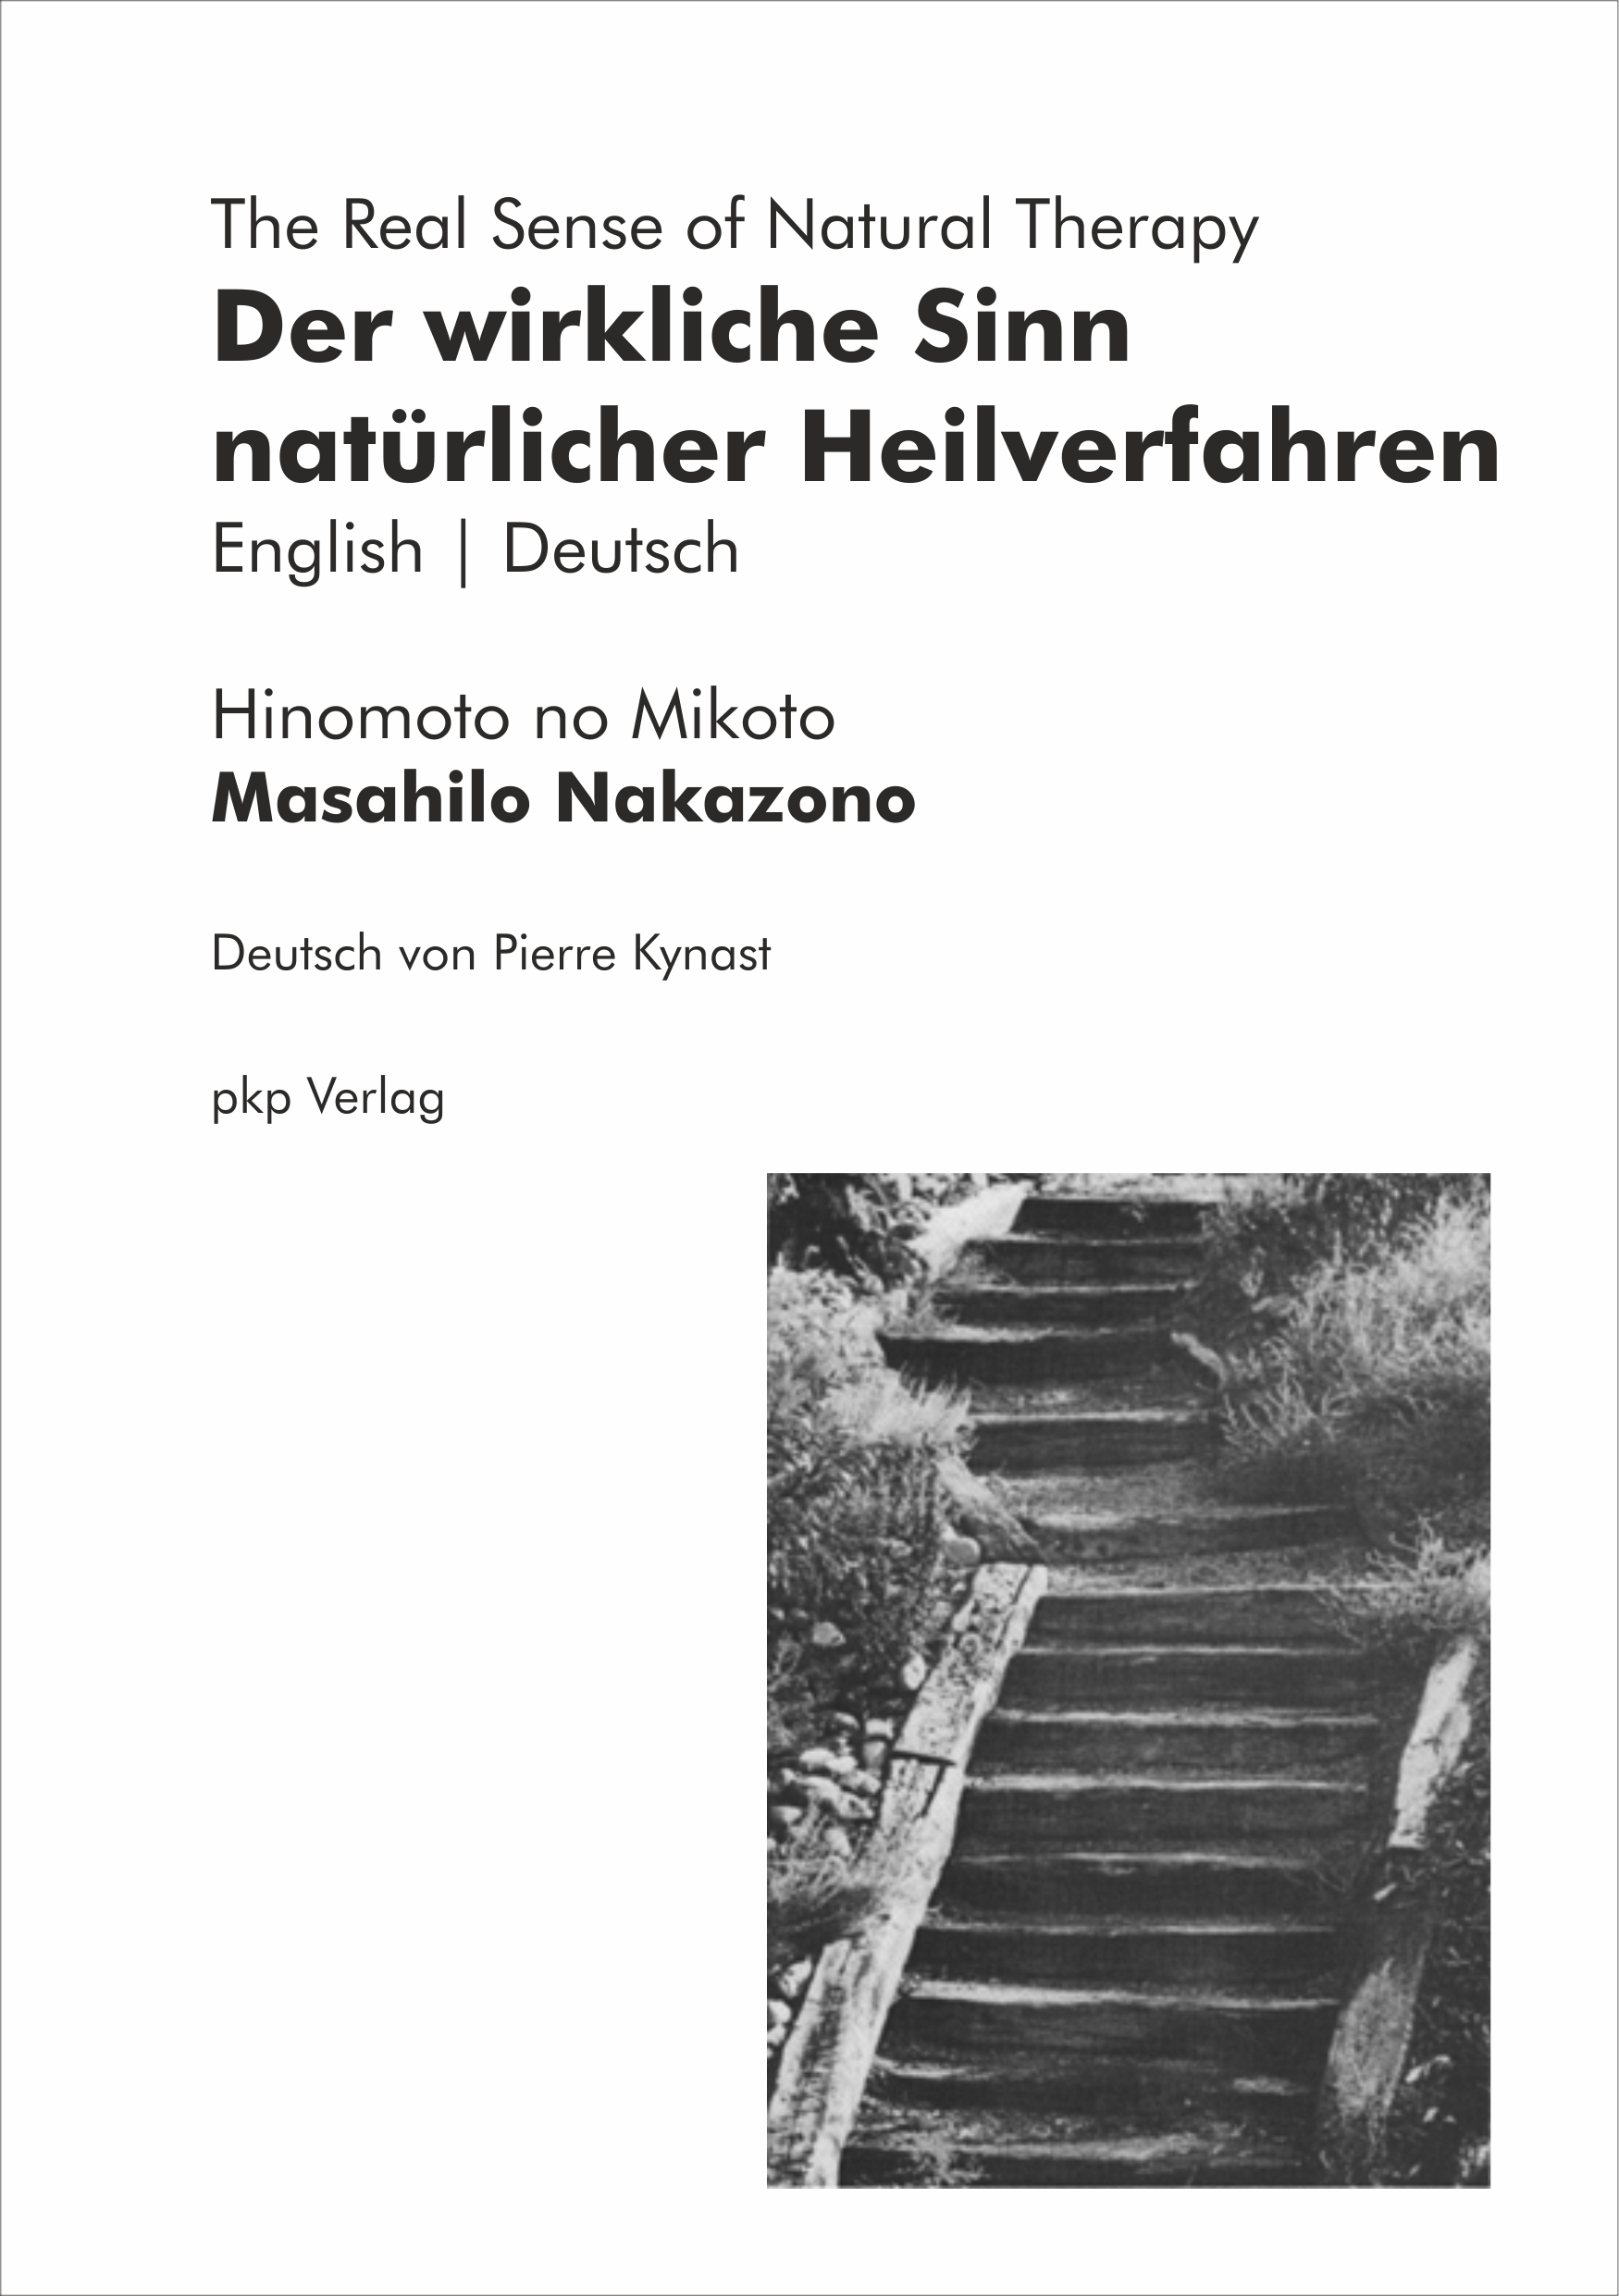 The Real Sense of Natural Therapy (ENG-DEU) (Mikoto Masahilo Nakazono)